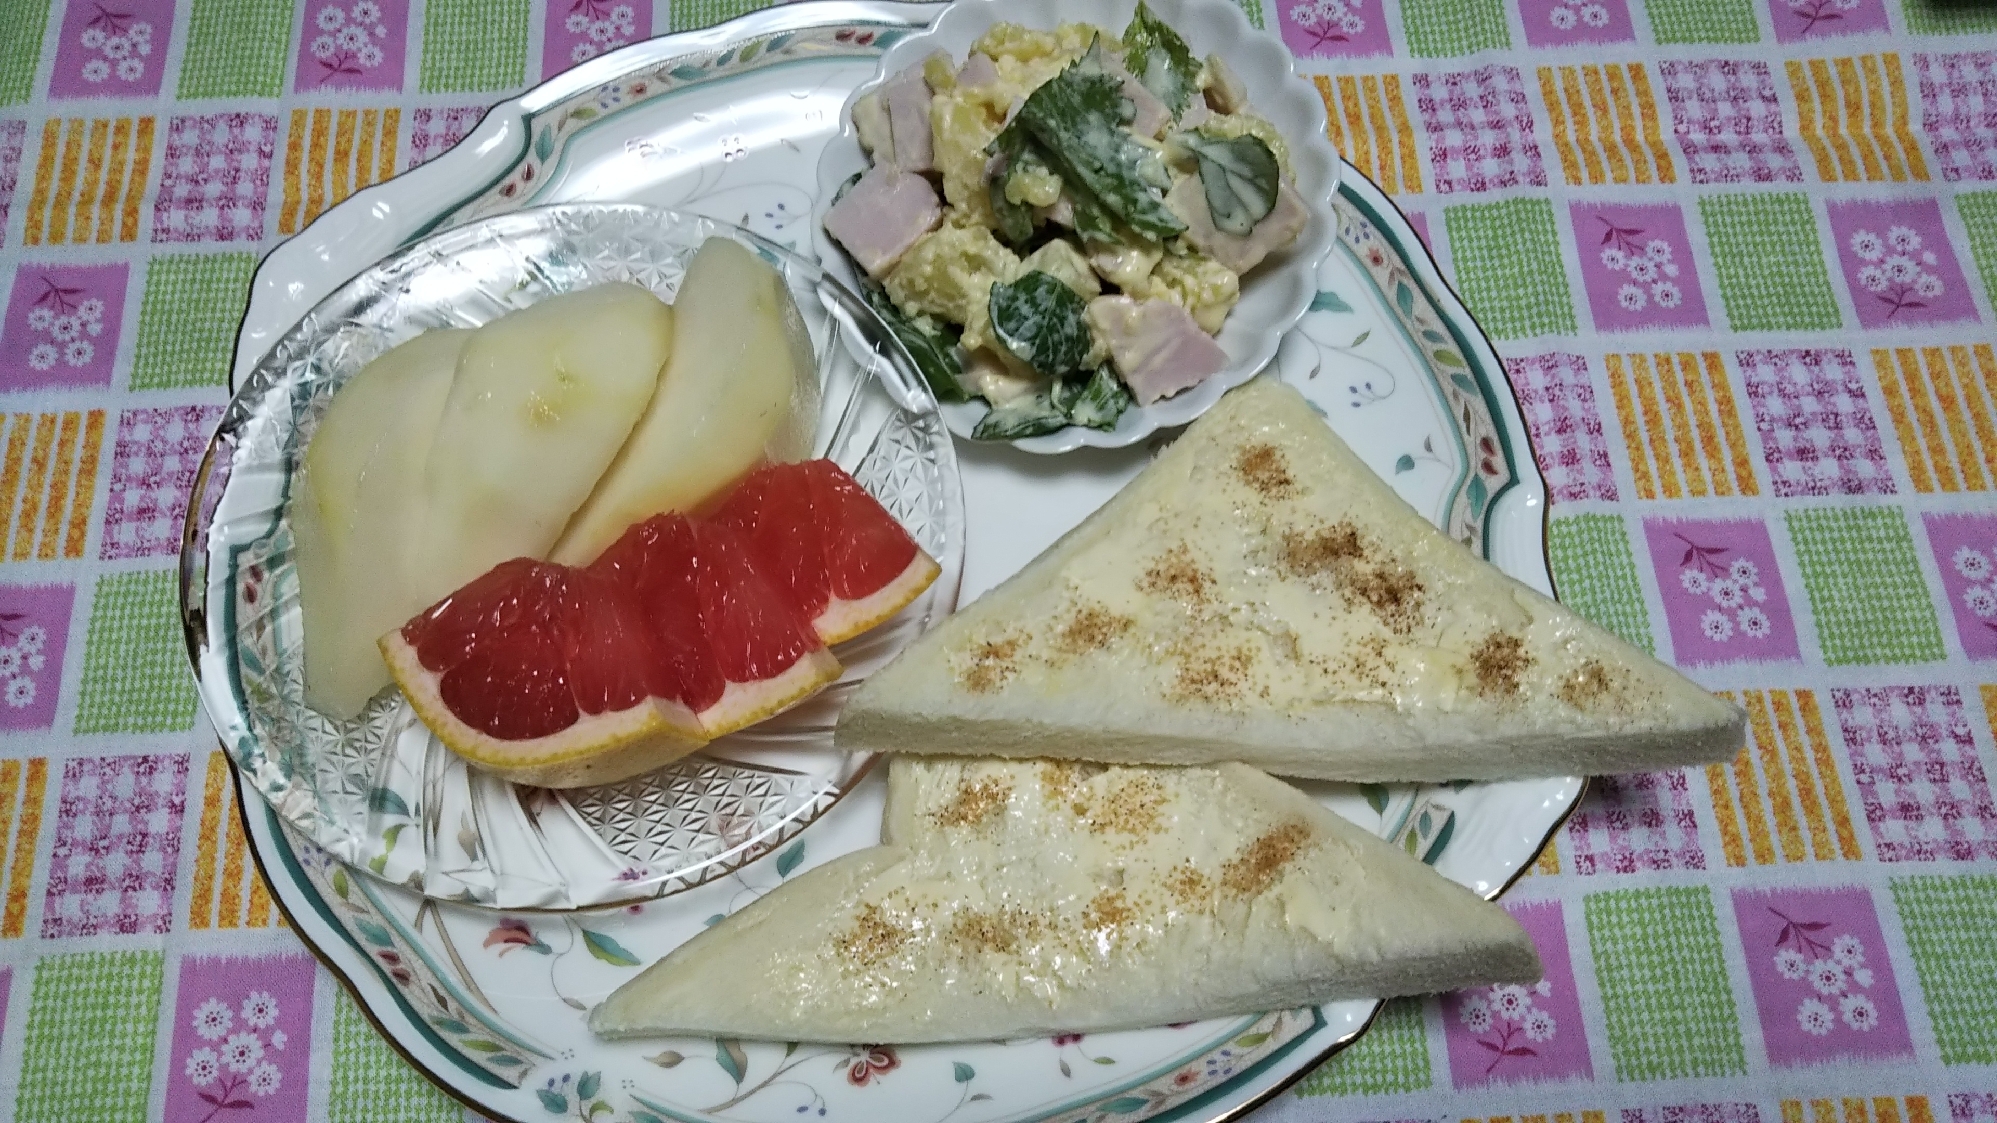 ポテトサラダとシナモンシュガーパンとフルーツの朝食